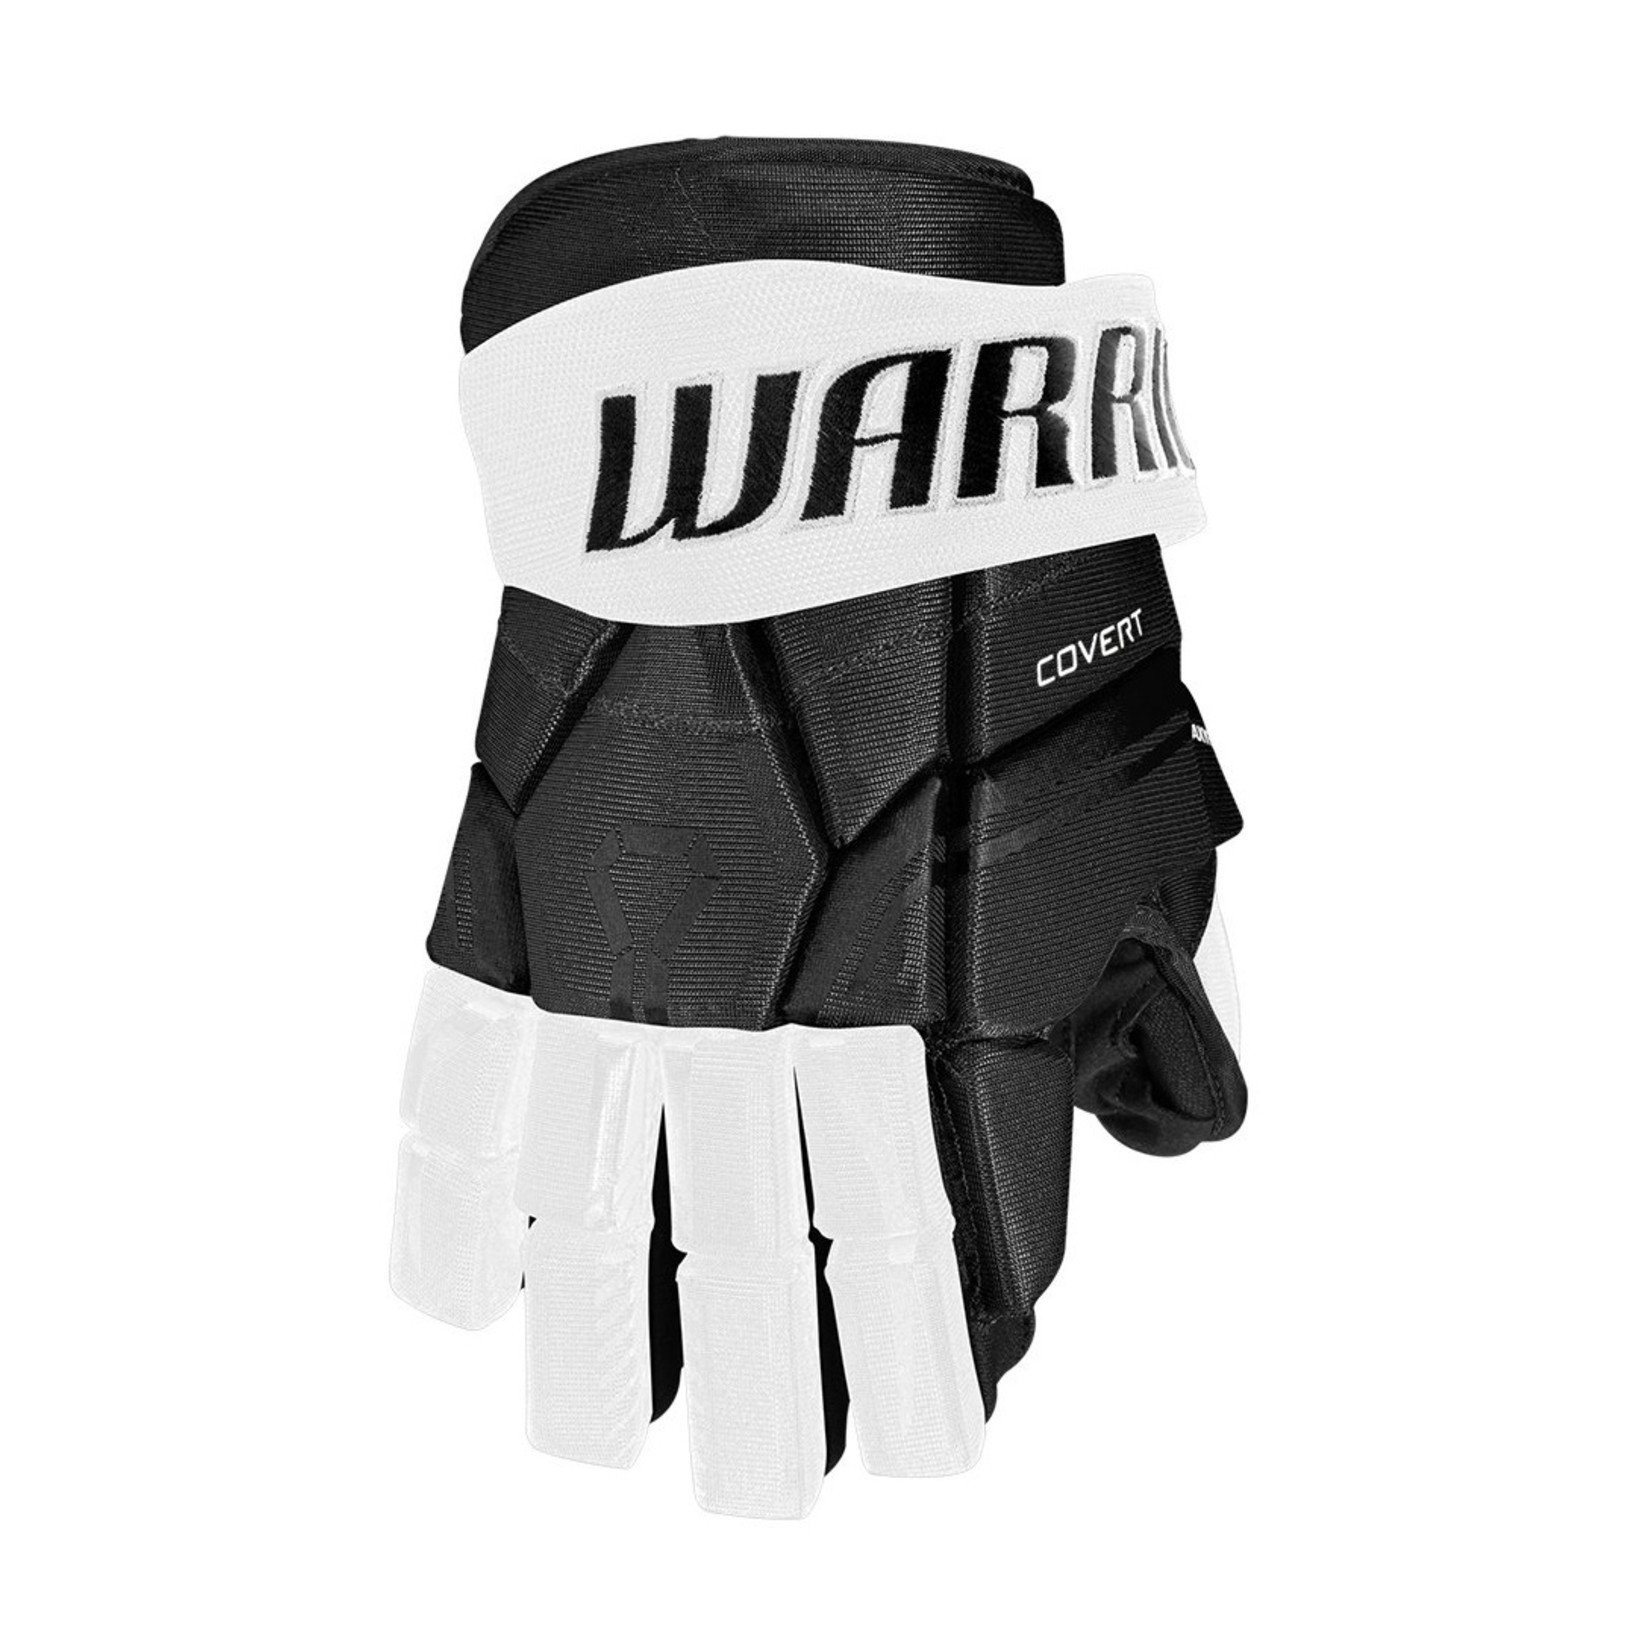 Warrior Warrior Covert QRE 30 Senior Gloves